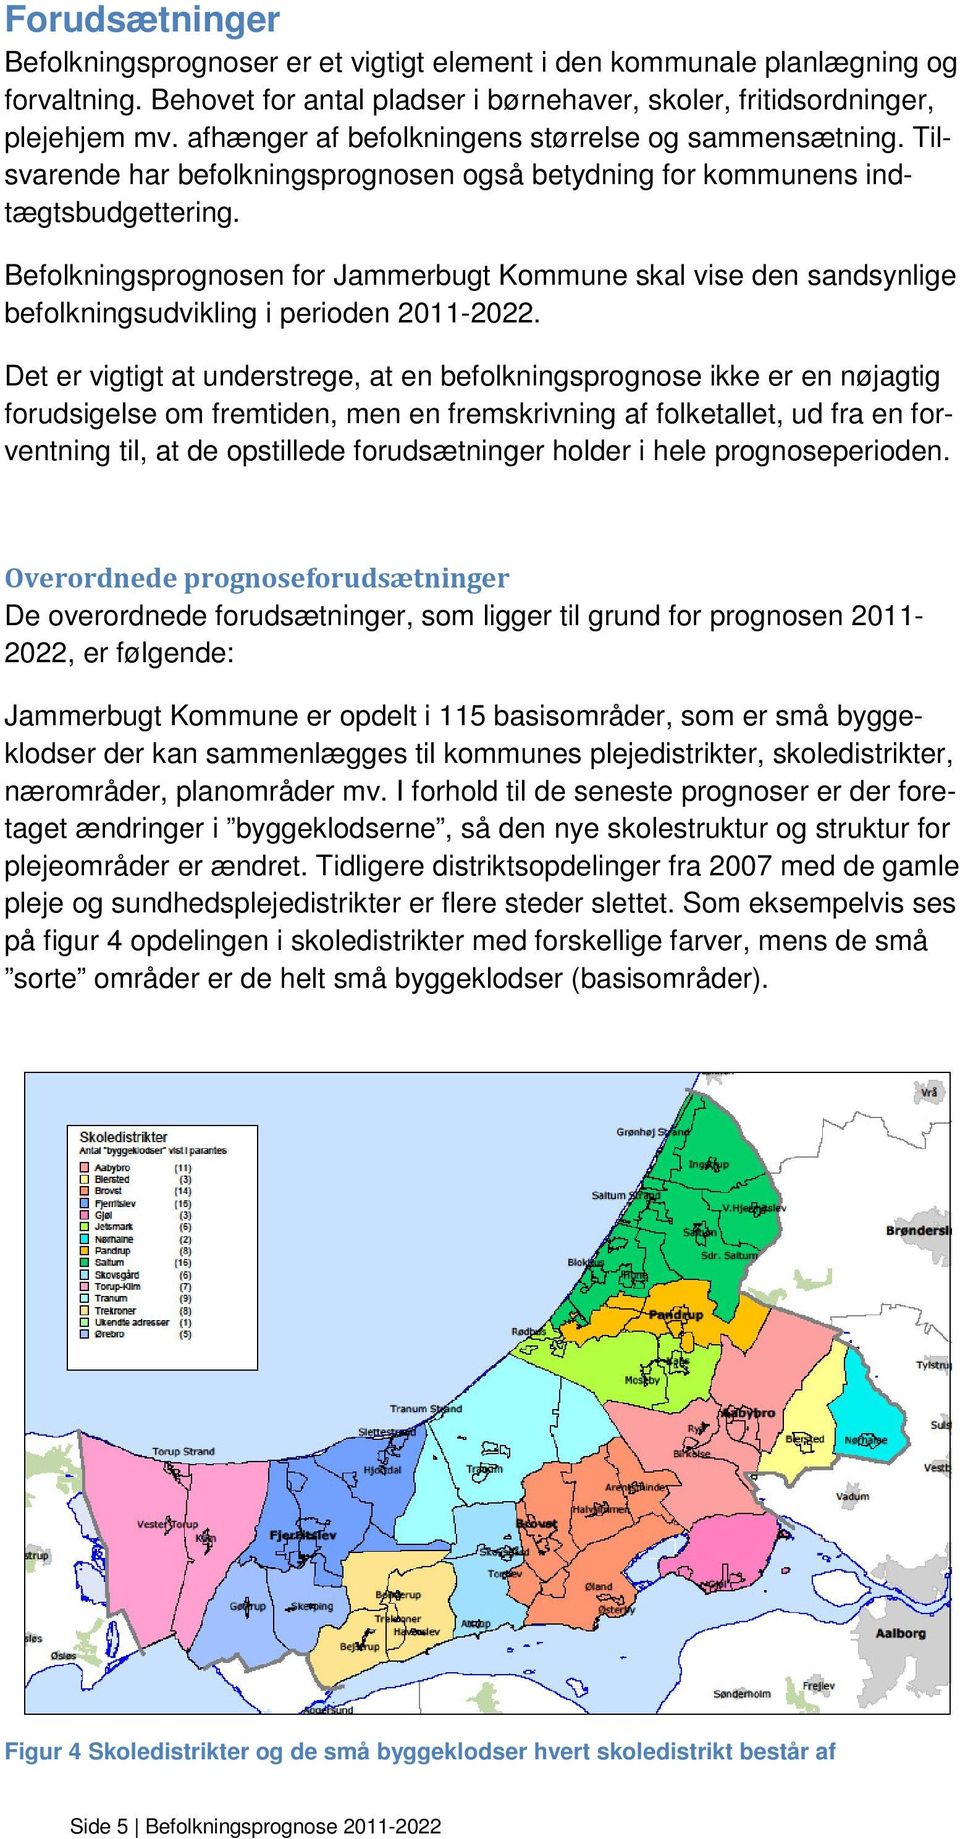 Befolkningsprognosen for Jammerbugt Kommune skal vise den sandsynlige befolkningsudvikling i perioden 2011-2022.